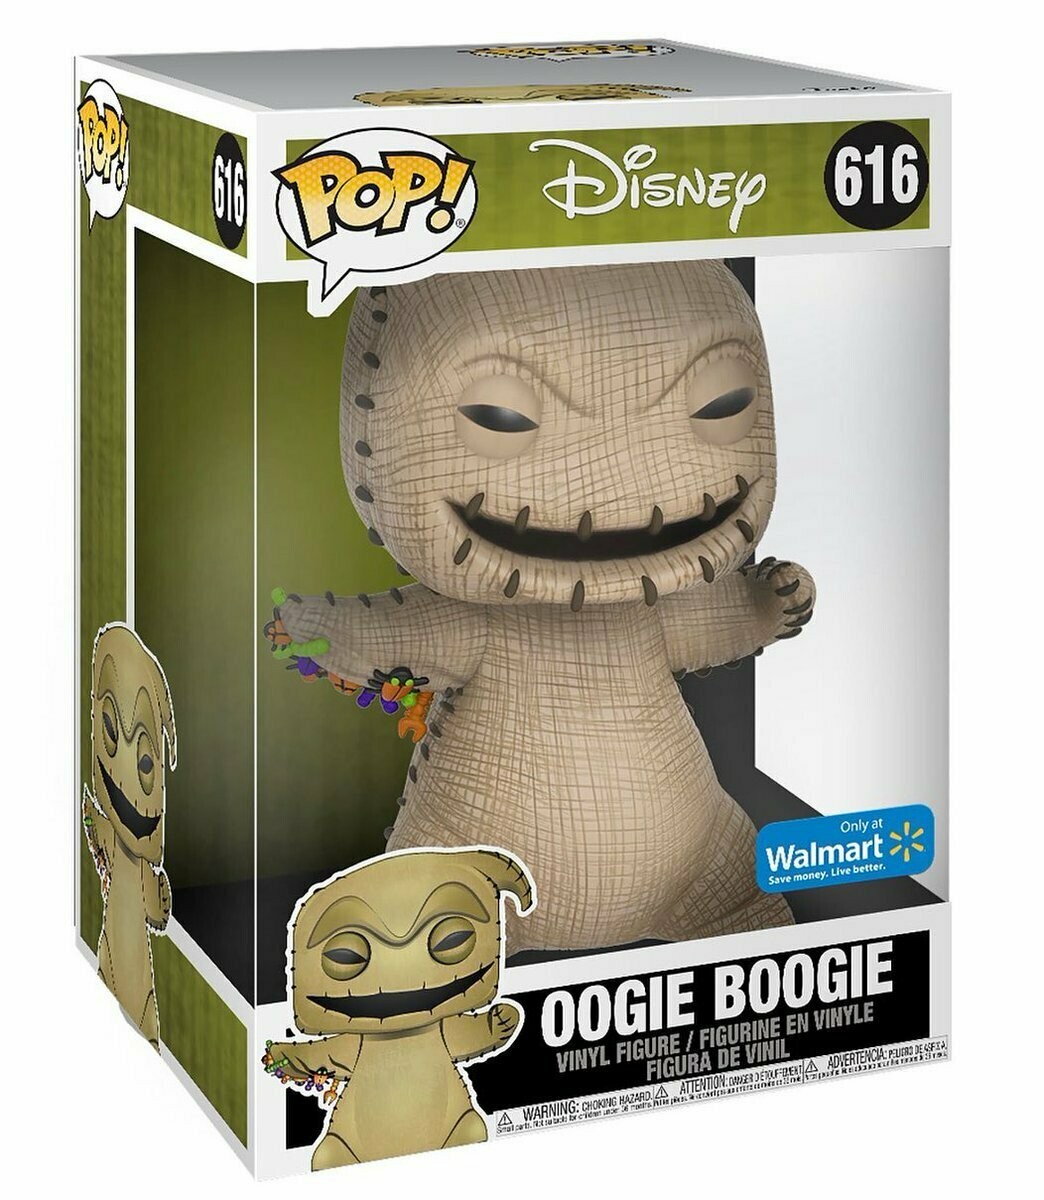 Oogie Boogie Exclusivo (25 cm.) 616 Funko Pop! - Pesadilla antes de Navidad